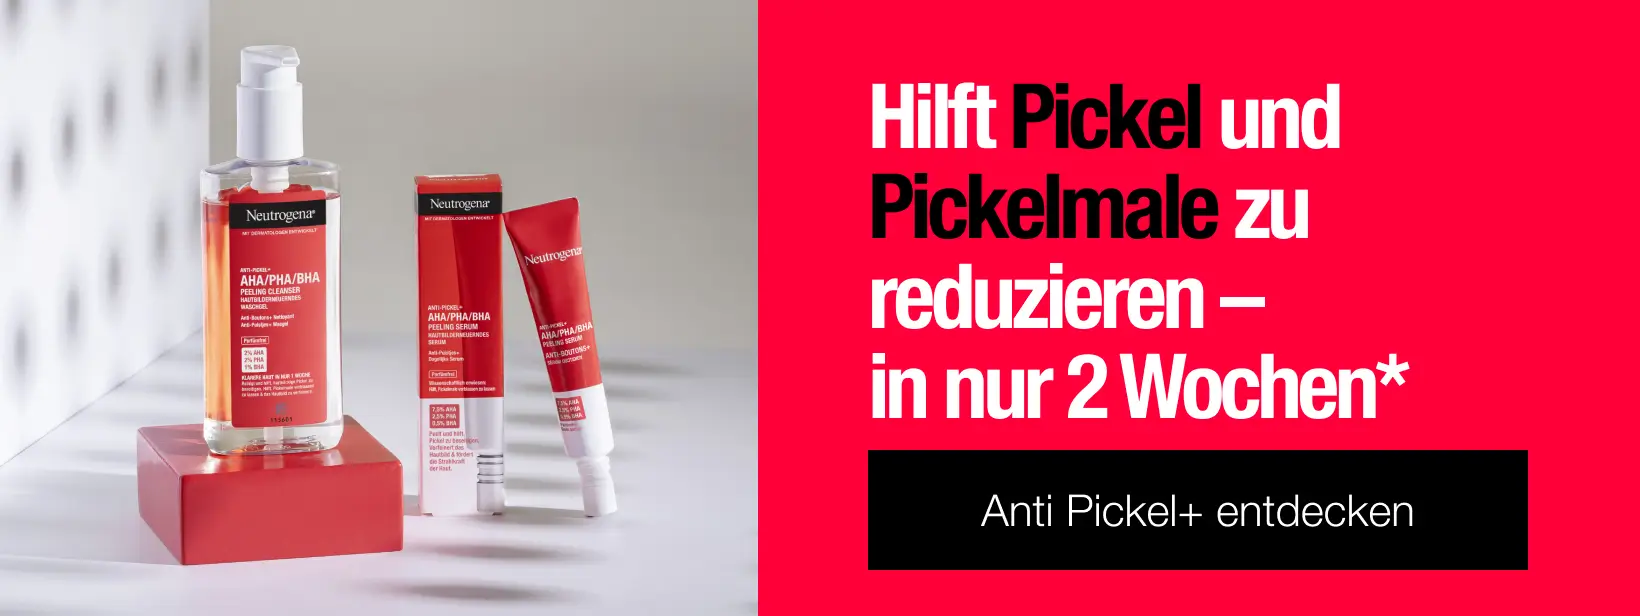 Anti Pickel+ - Hilft Pickel und Pickelmale zu reduzieren - in nur 2 Wochen